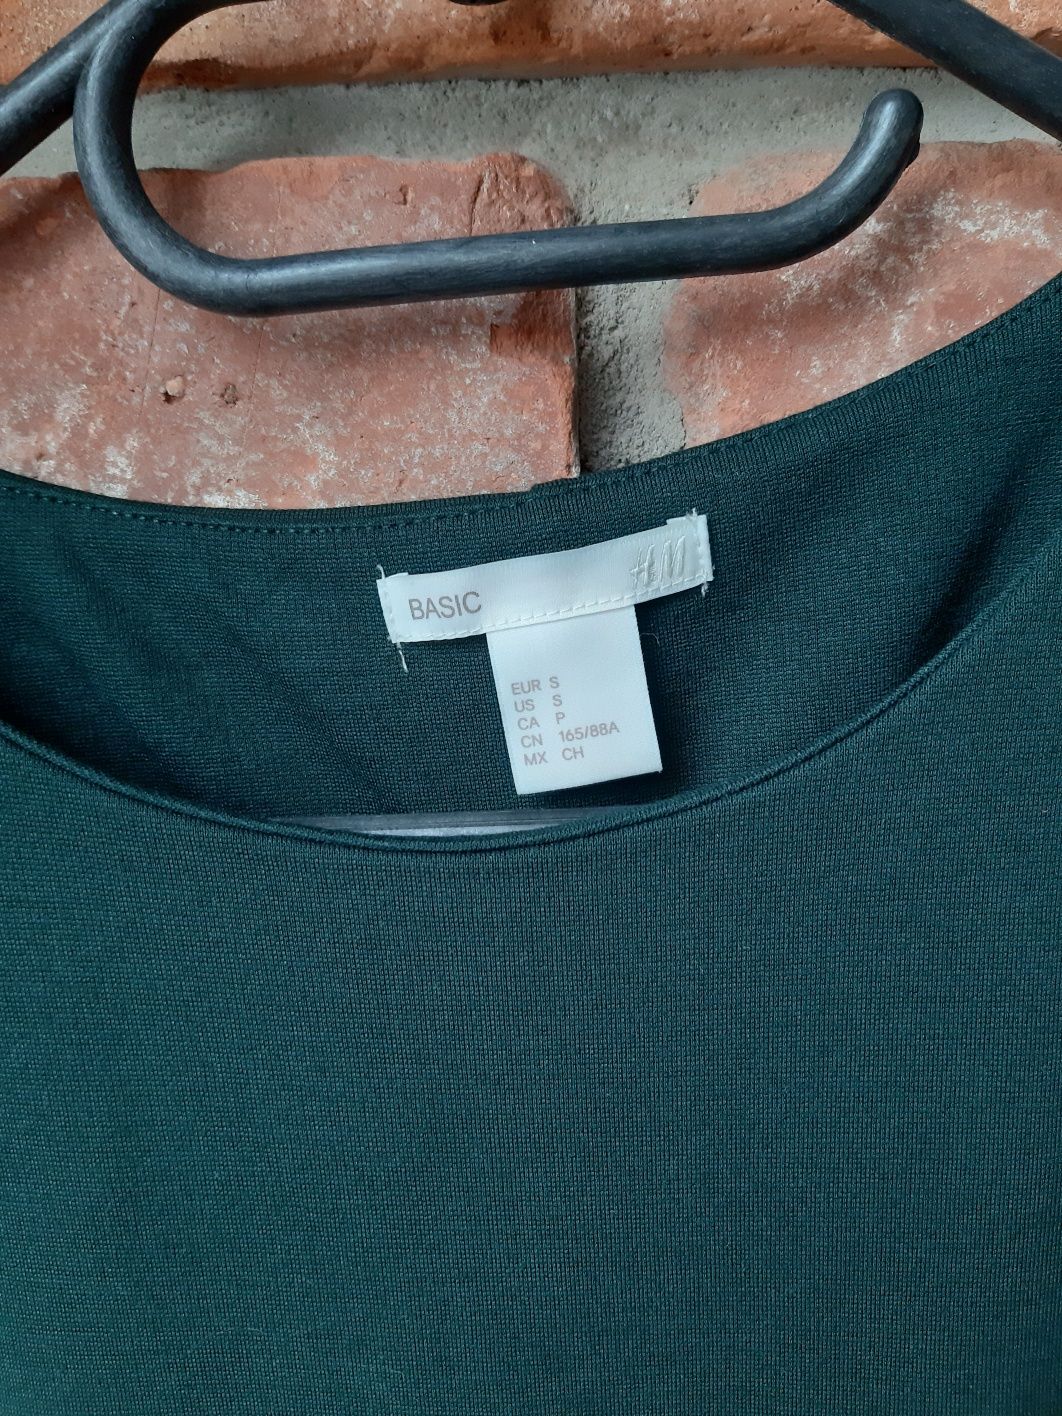 Sukienka z kieszeniami zielona na długi rękaw H&M S 36 Nowa bez metki